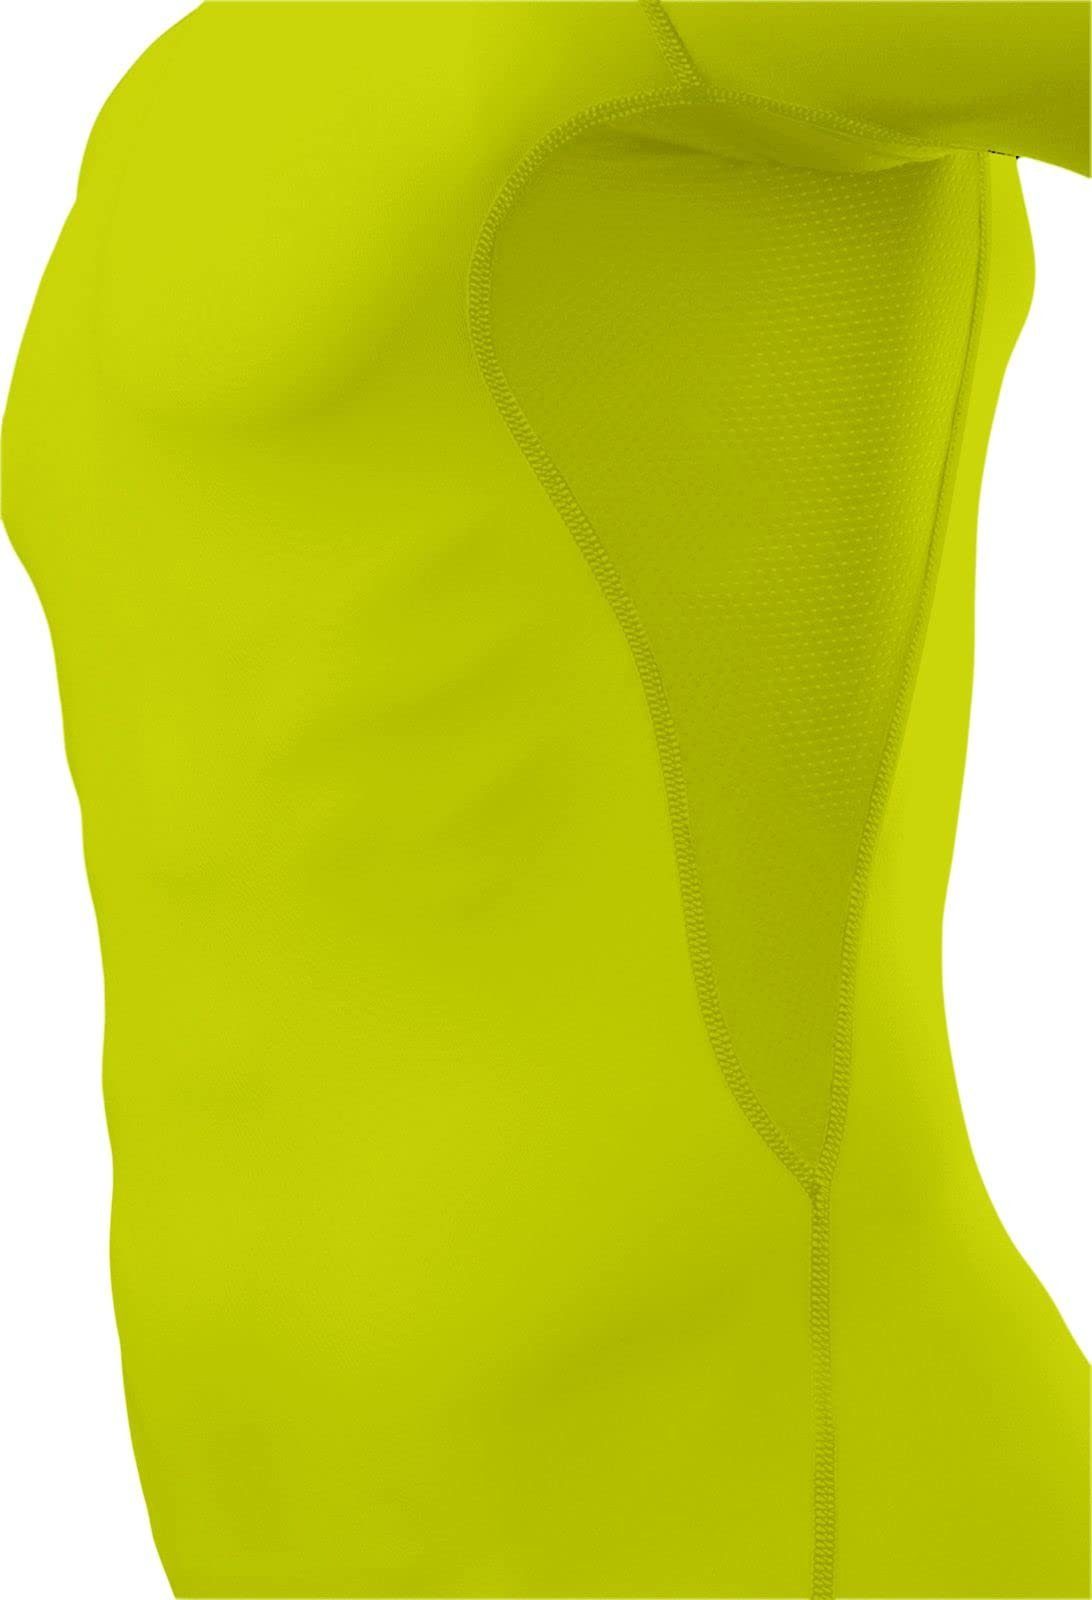 Licht Herren TCA Grün Funktionsunterhemd Sportshirt, HyperFusion kurzärmlig, - elastisch TCA